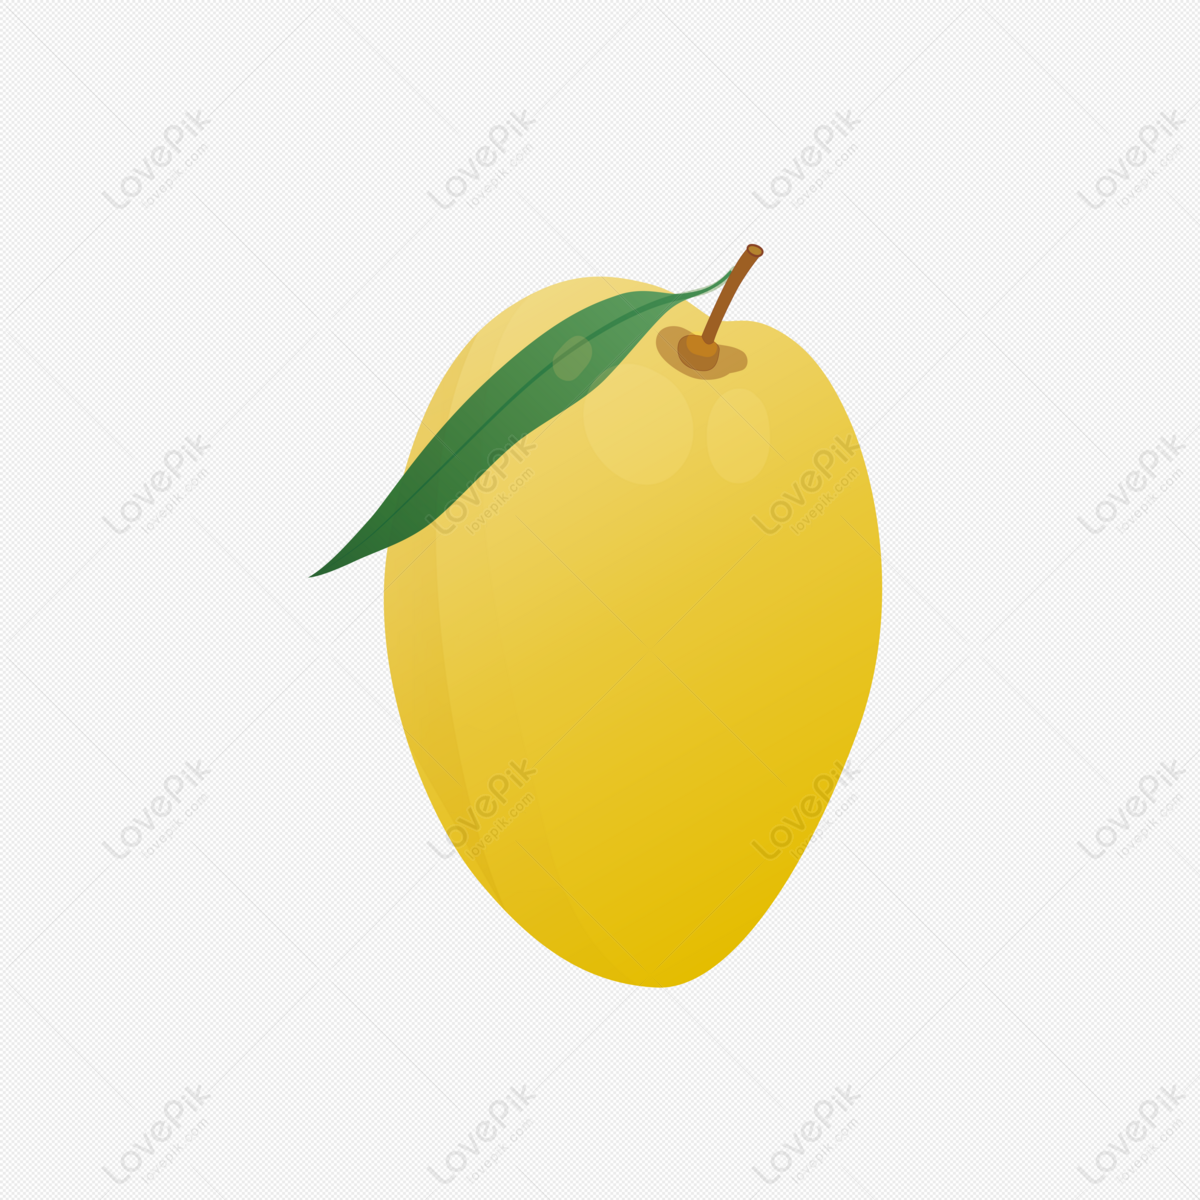 Nếu bạn đang tìm kiếm phần tử hoạt họa vector hoạt hình ngộ nghĩnh trái cây dễ thương, xoài màu vàng, thì đây là sự lựa chọn tốt nhất cho bạn. Cùng khám phá bộ sưu tập các phần tử hoạt hình dễ thương để tạo nên những tác phẩm đầy sáng tạo và thú vị.